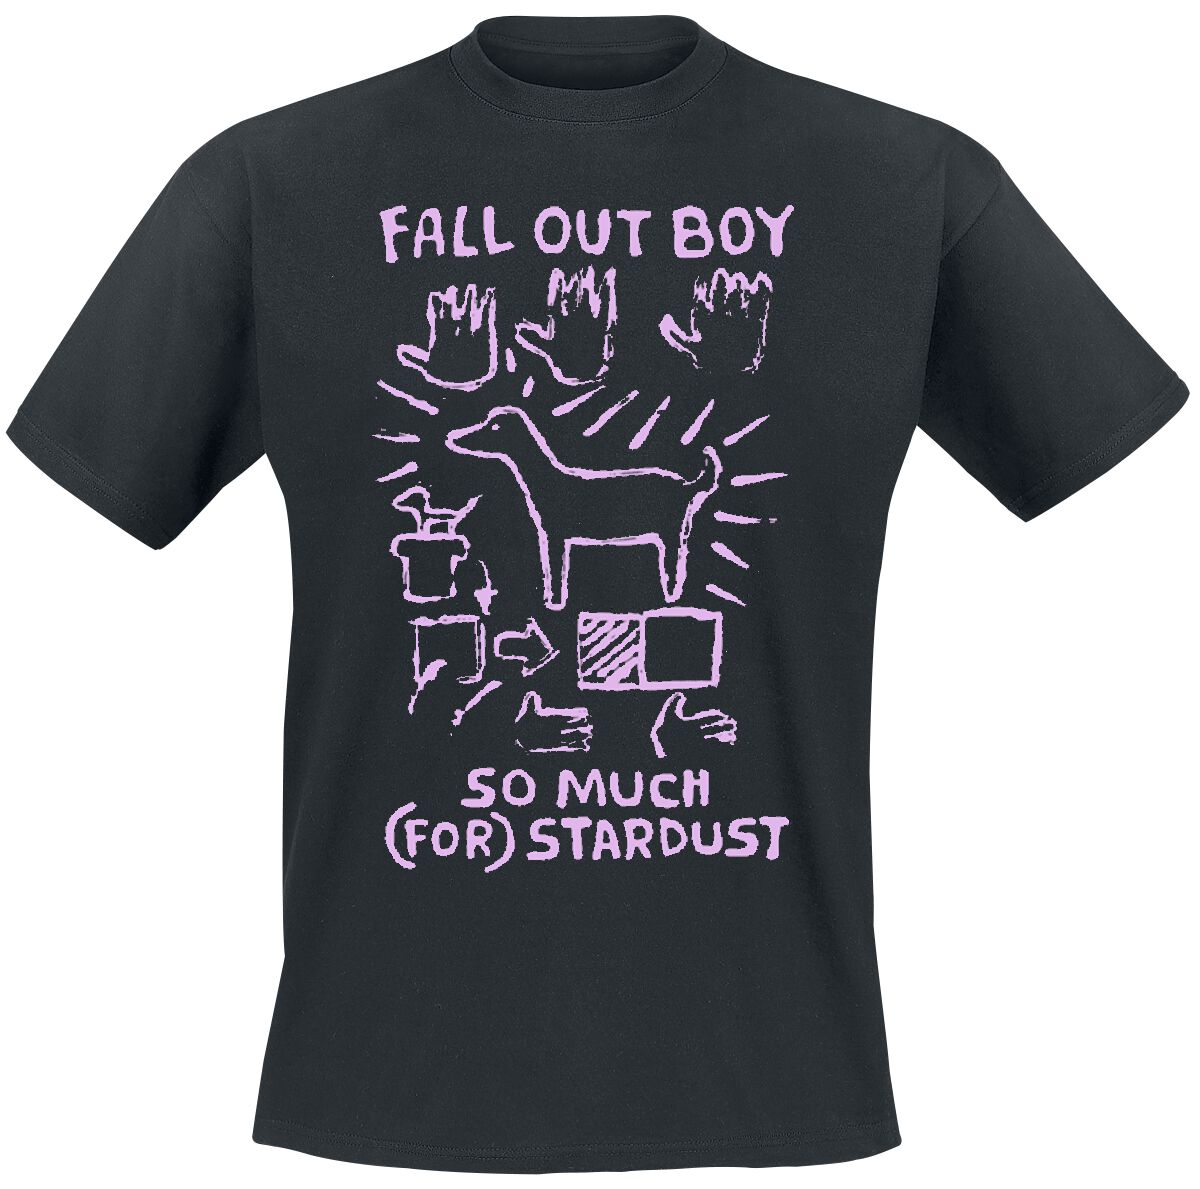 Fall Out Boy T-Shirt - Pink Dog So Much Stardust - S bis L - für Männer - Größe L - schwarz  - Lizenziertes Merchandise!